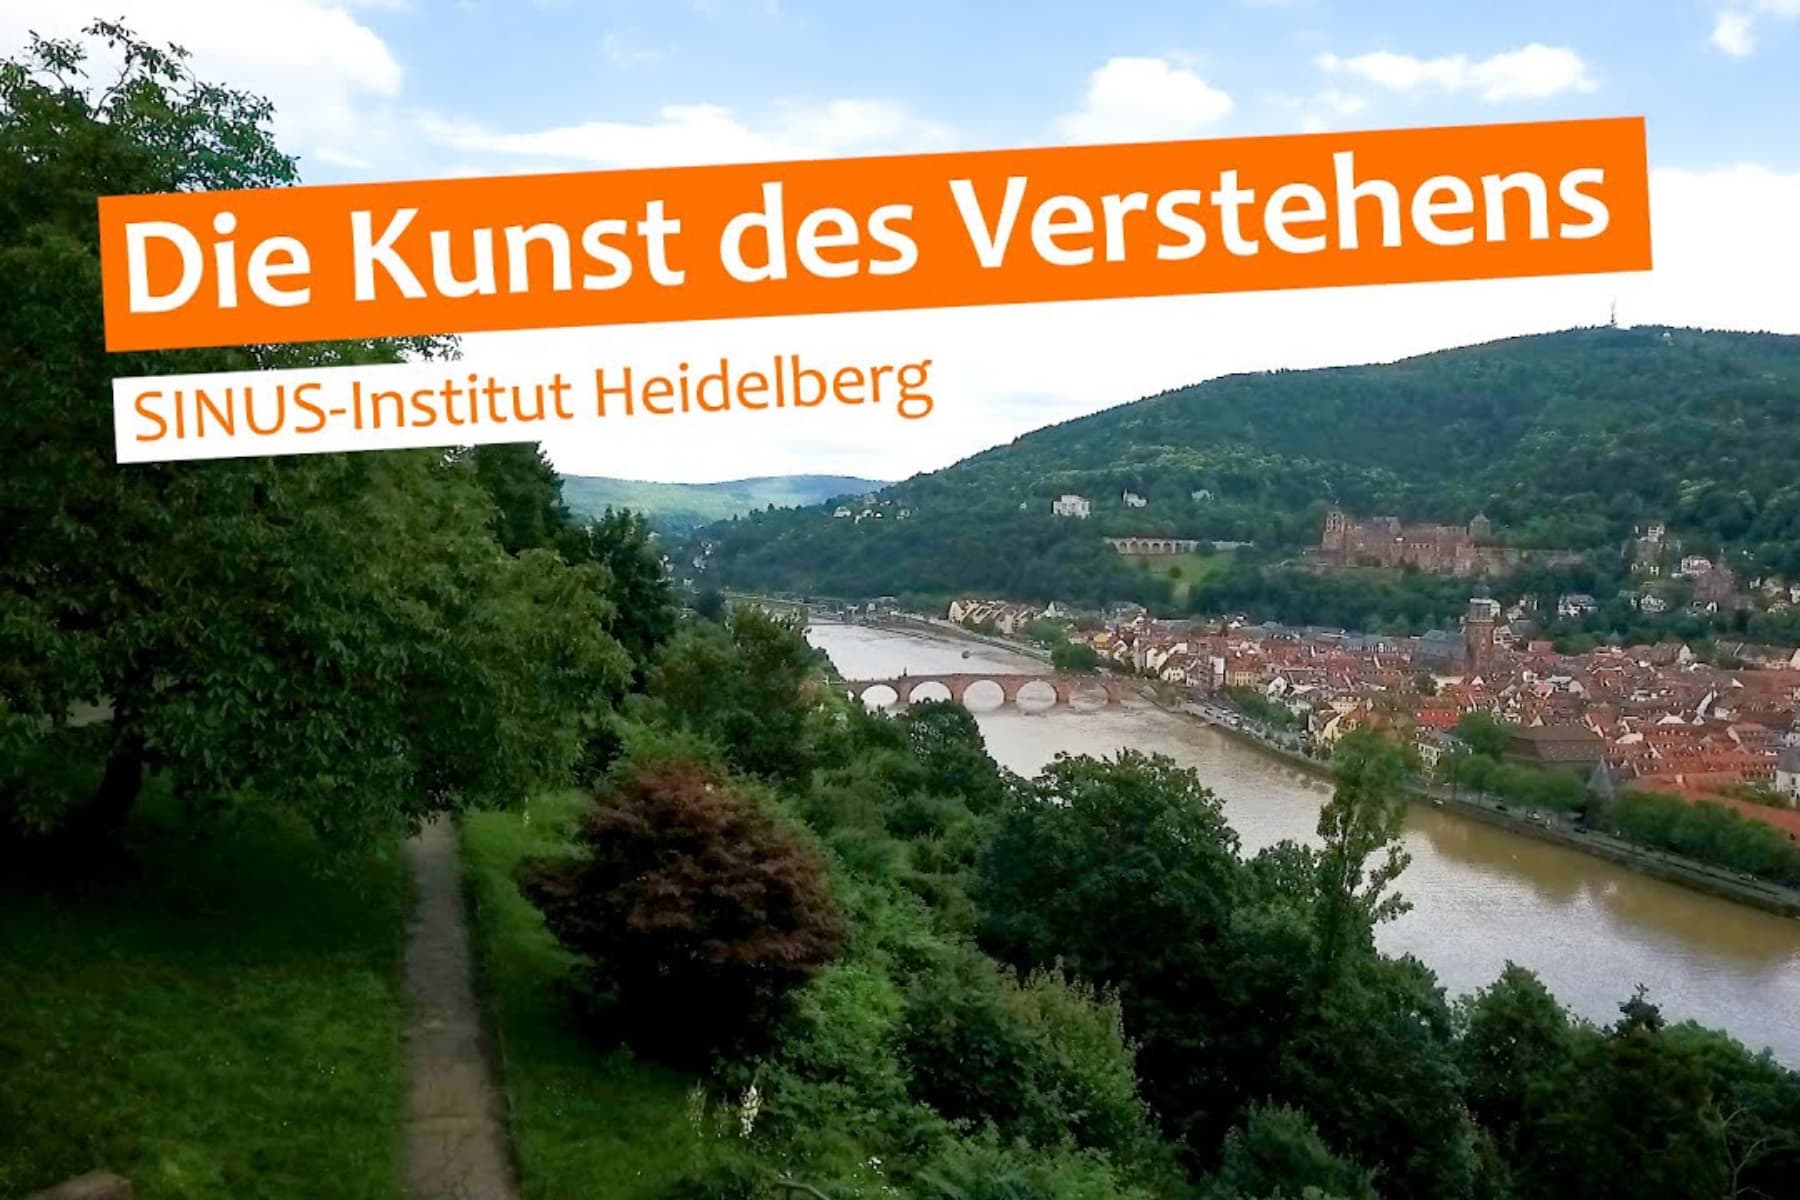 SINUS-Institut Heidelberg | Die Kunst des Verstehens